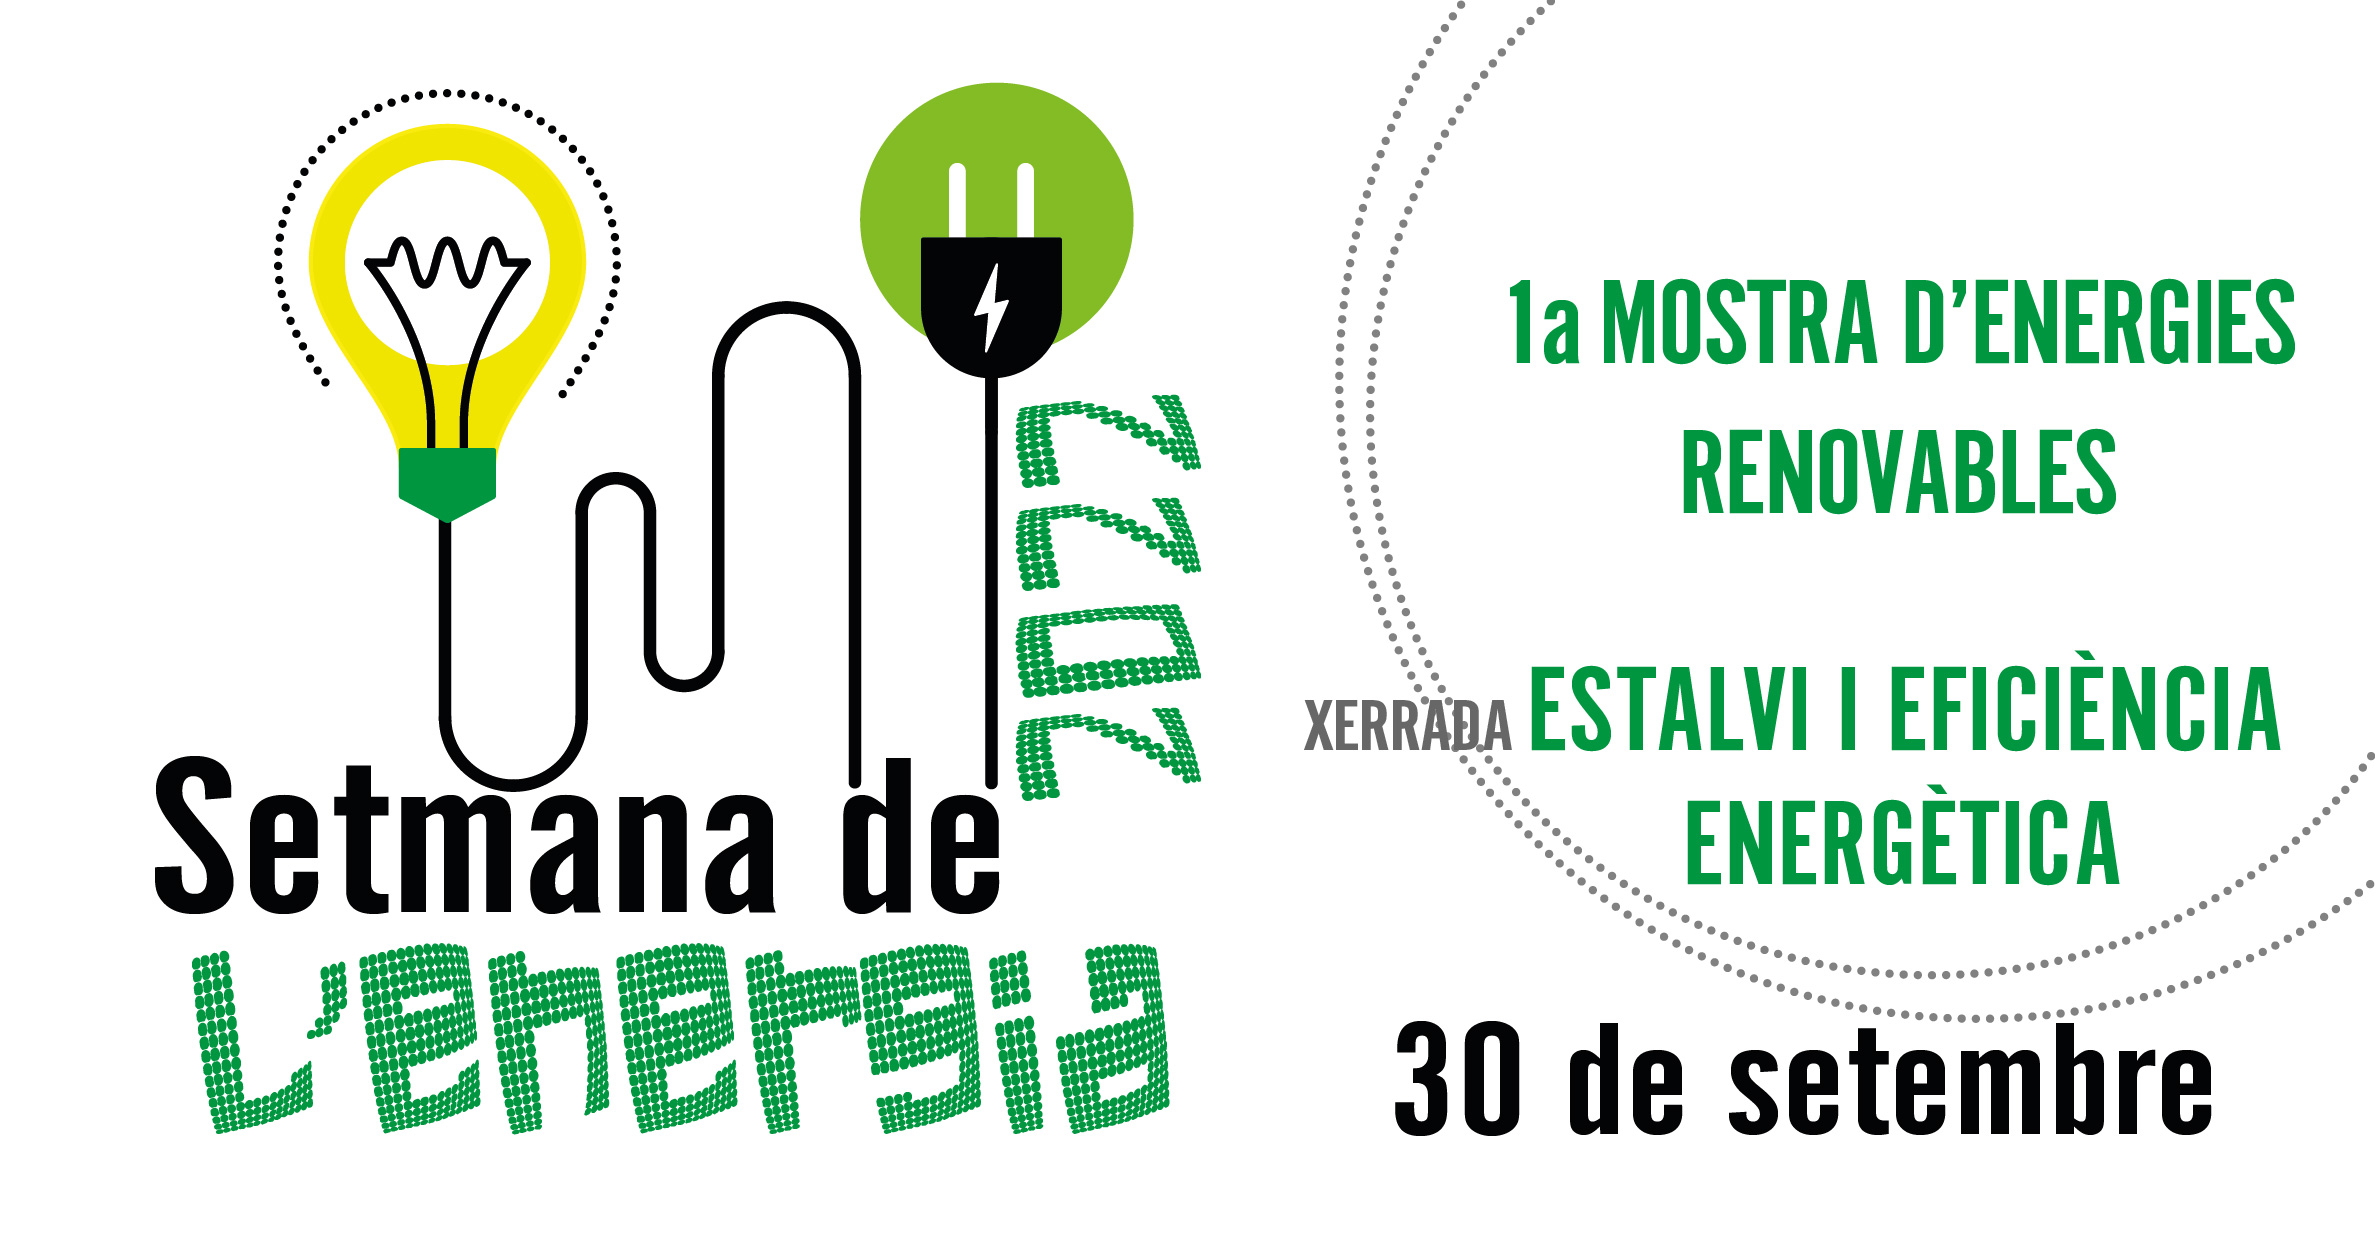 L'Ajuntament organitza una mostra d'energies renovables amb empreses locals per la Setmana de l'Energia